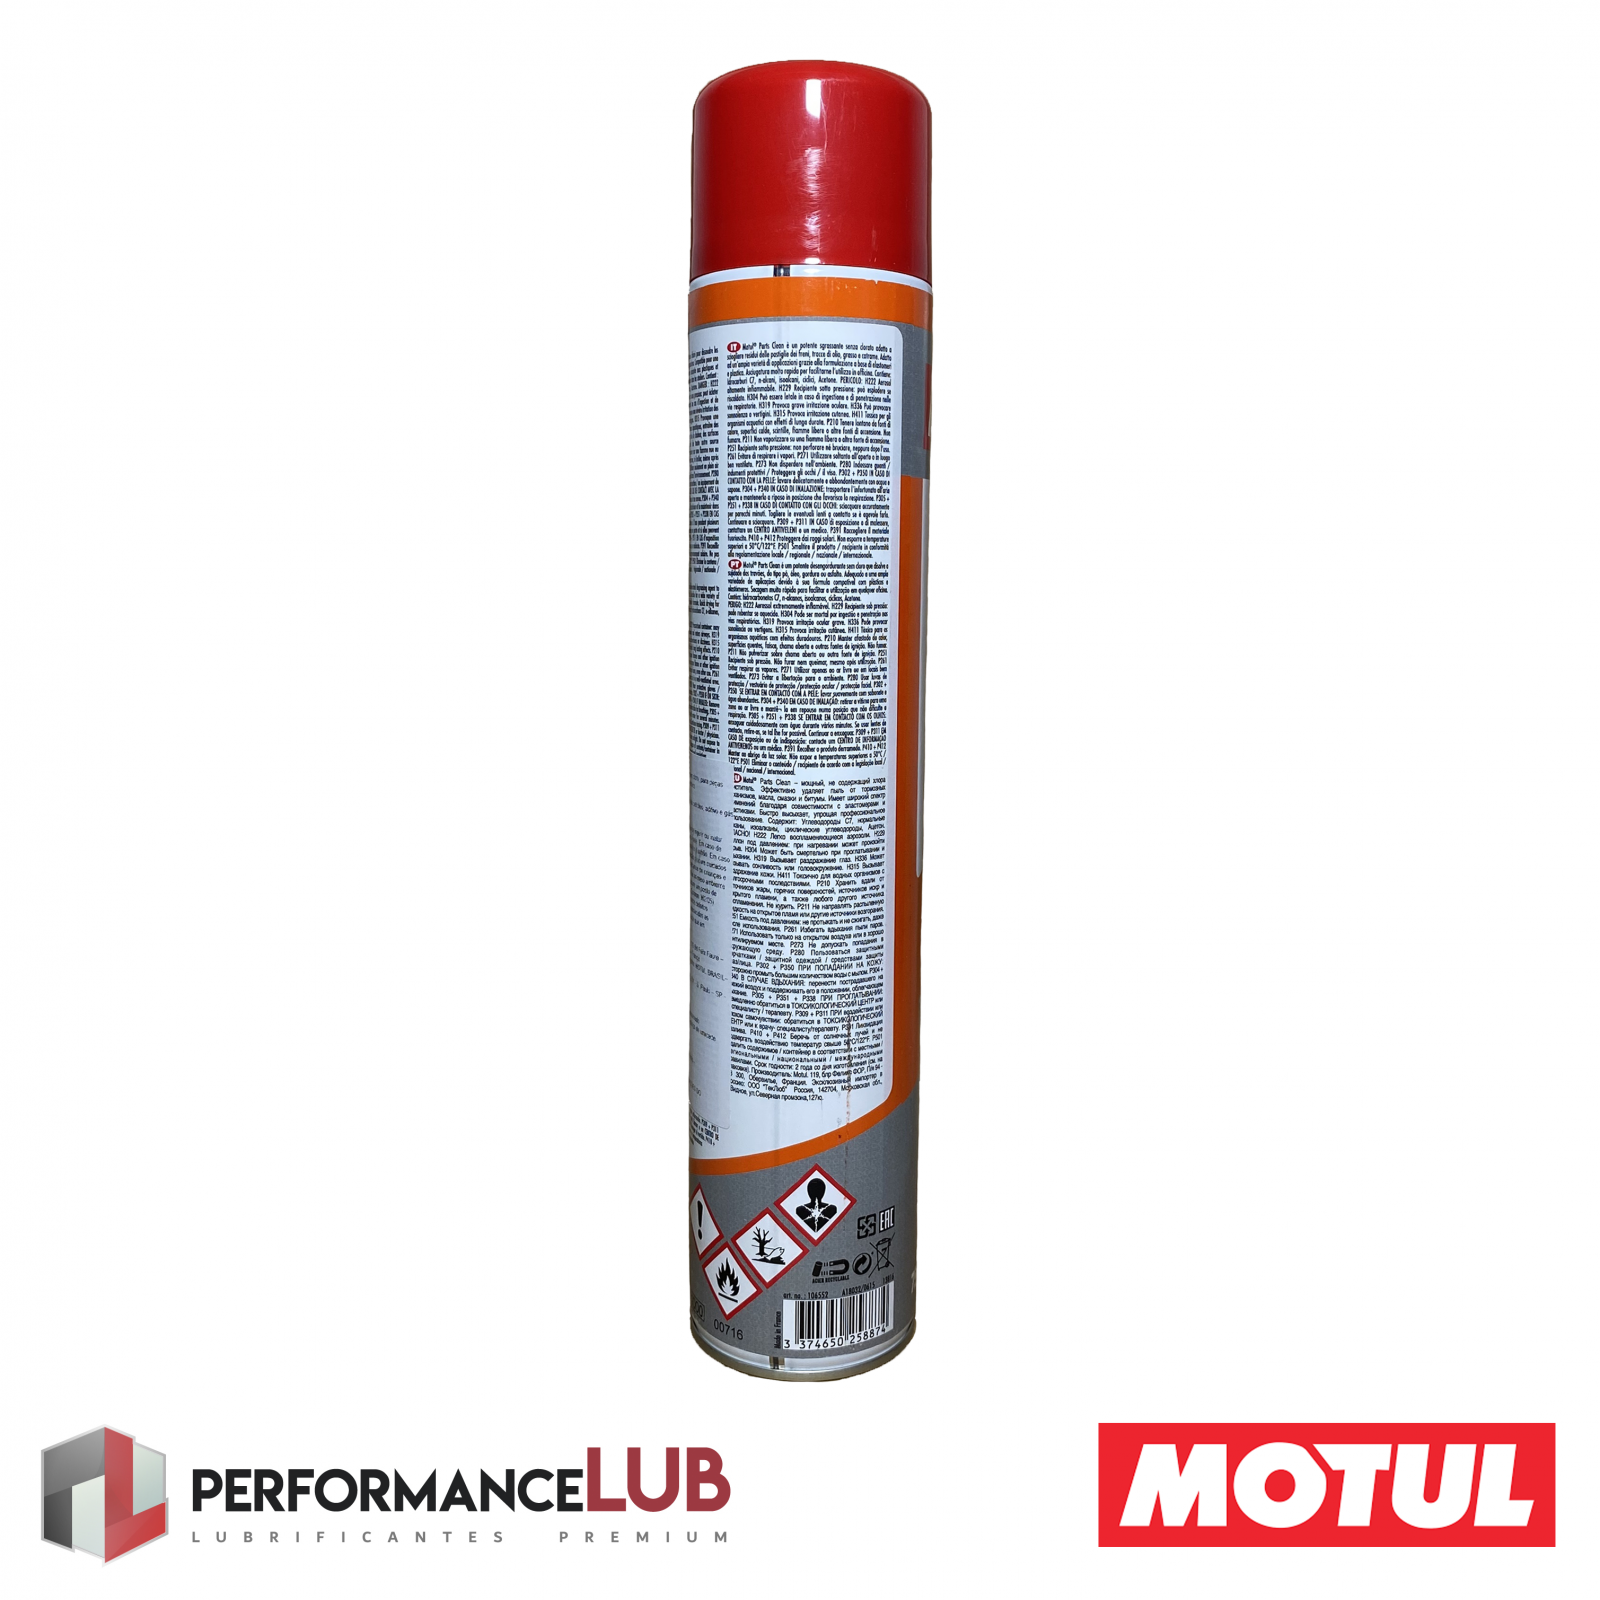 Motul Parts Clean - 750 ml - PerformanceLUB Lubrificantes Premium